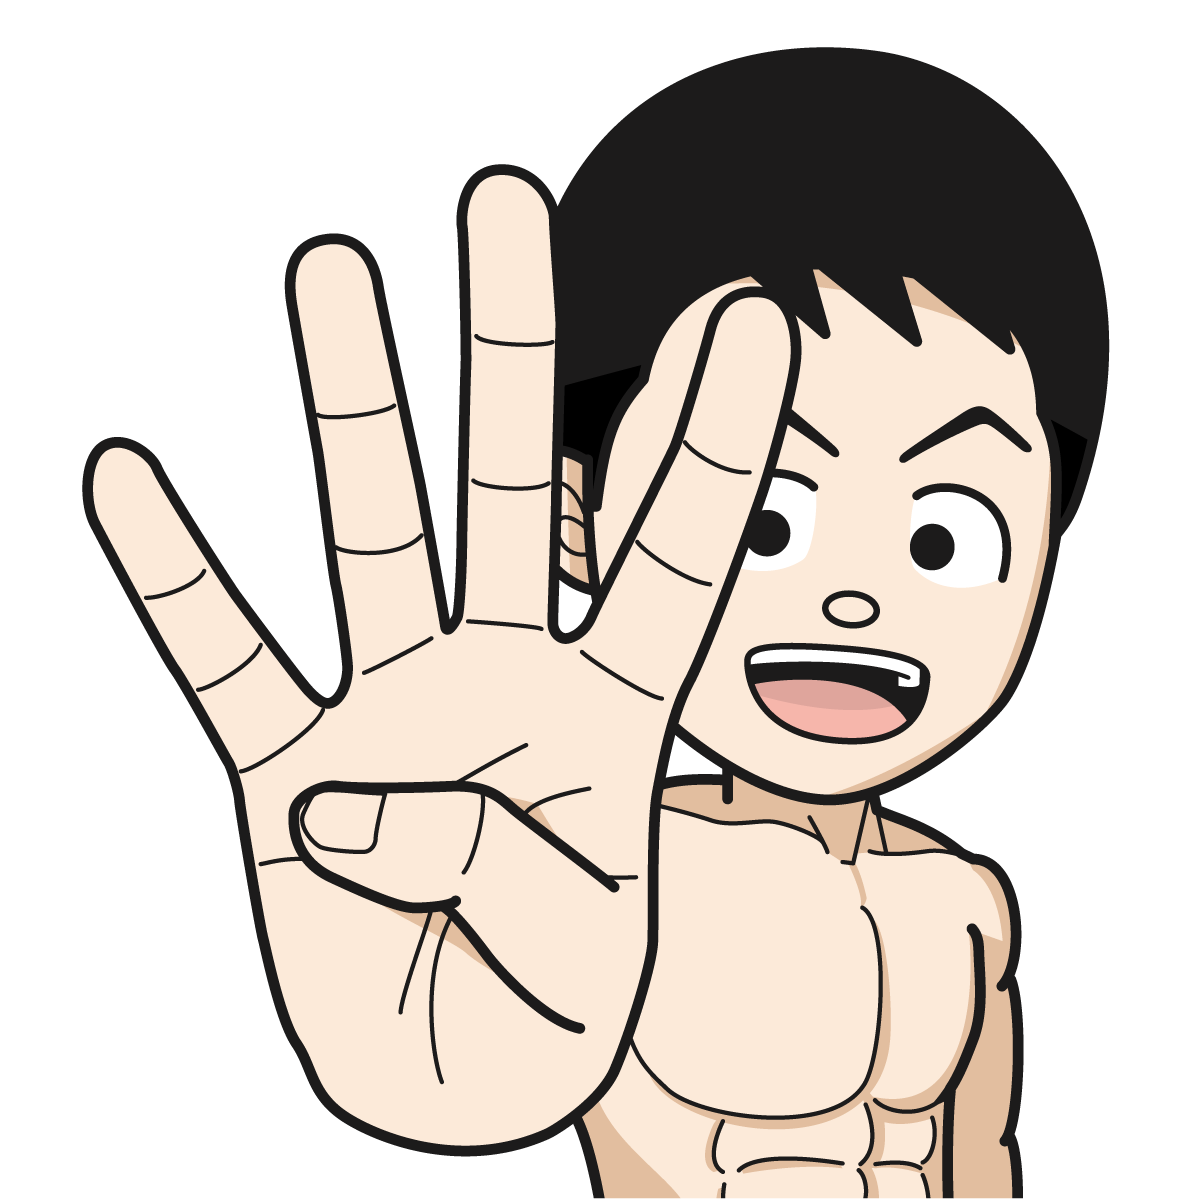 指で 4 を作るマッチョな裸姿の男性hand 19 イラスト Mido Kichi